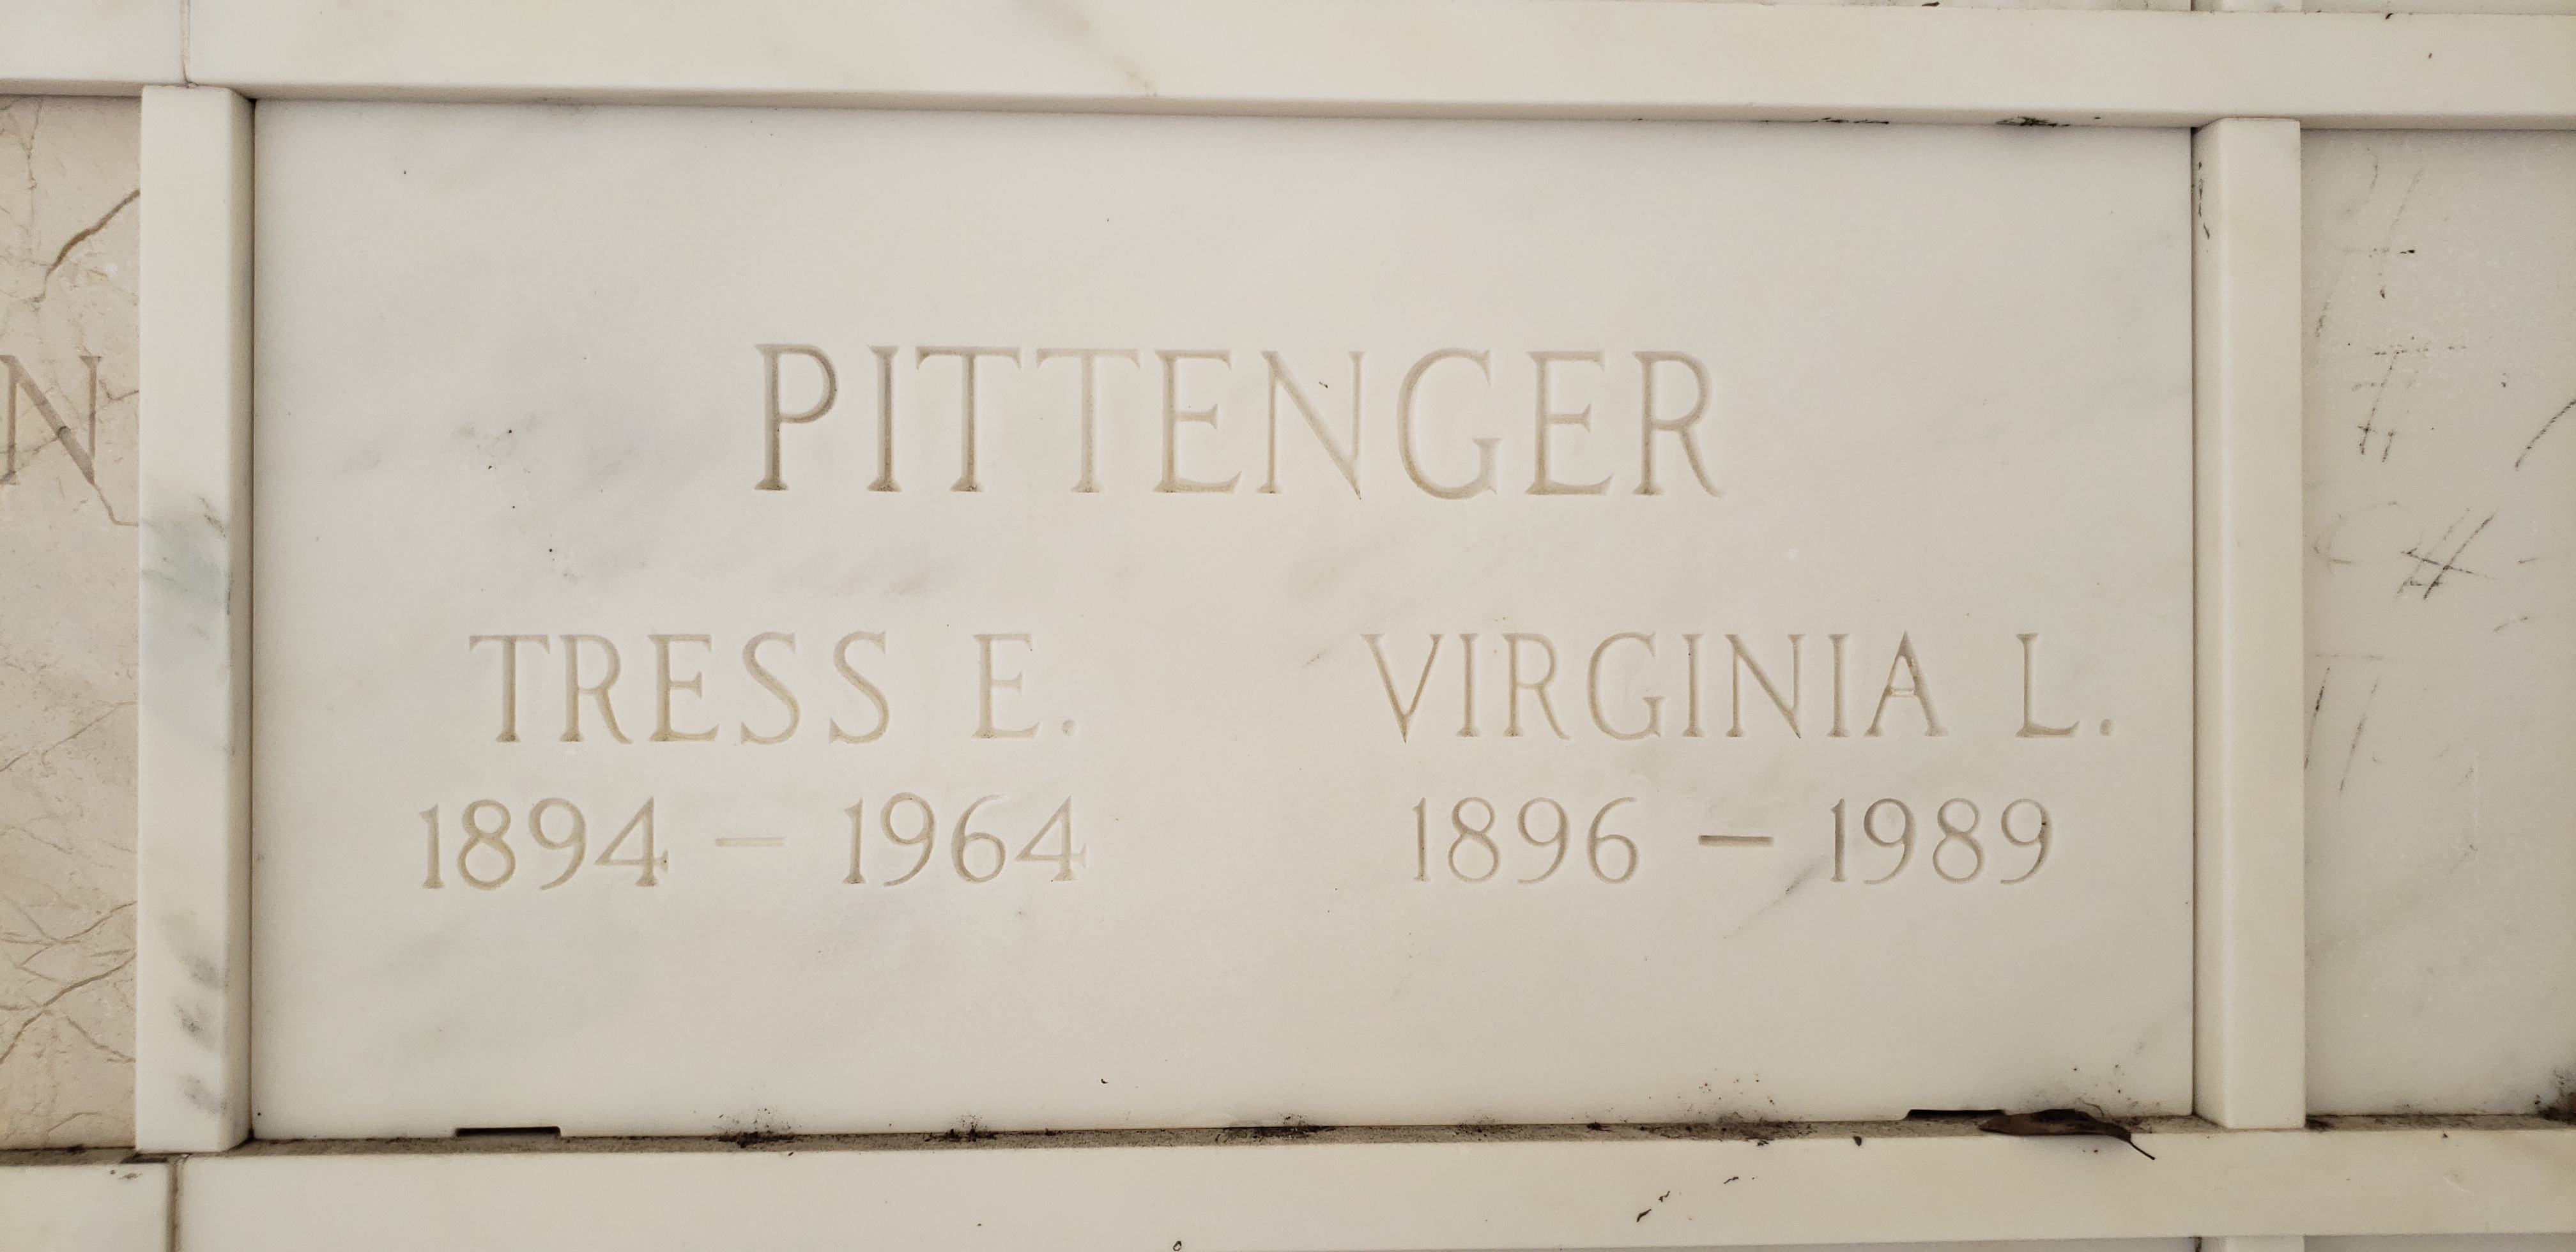 Virginia L Pittenger